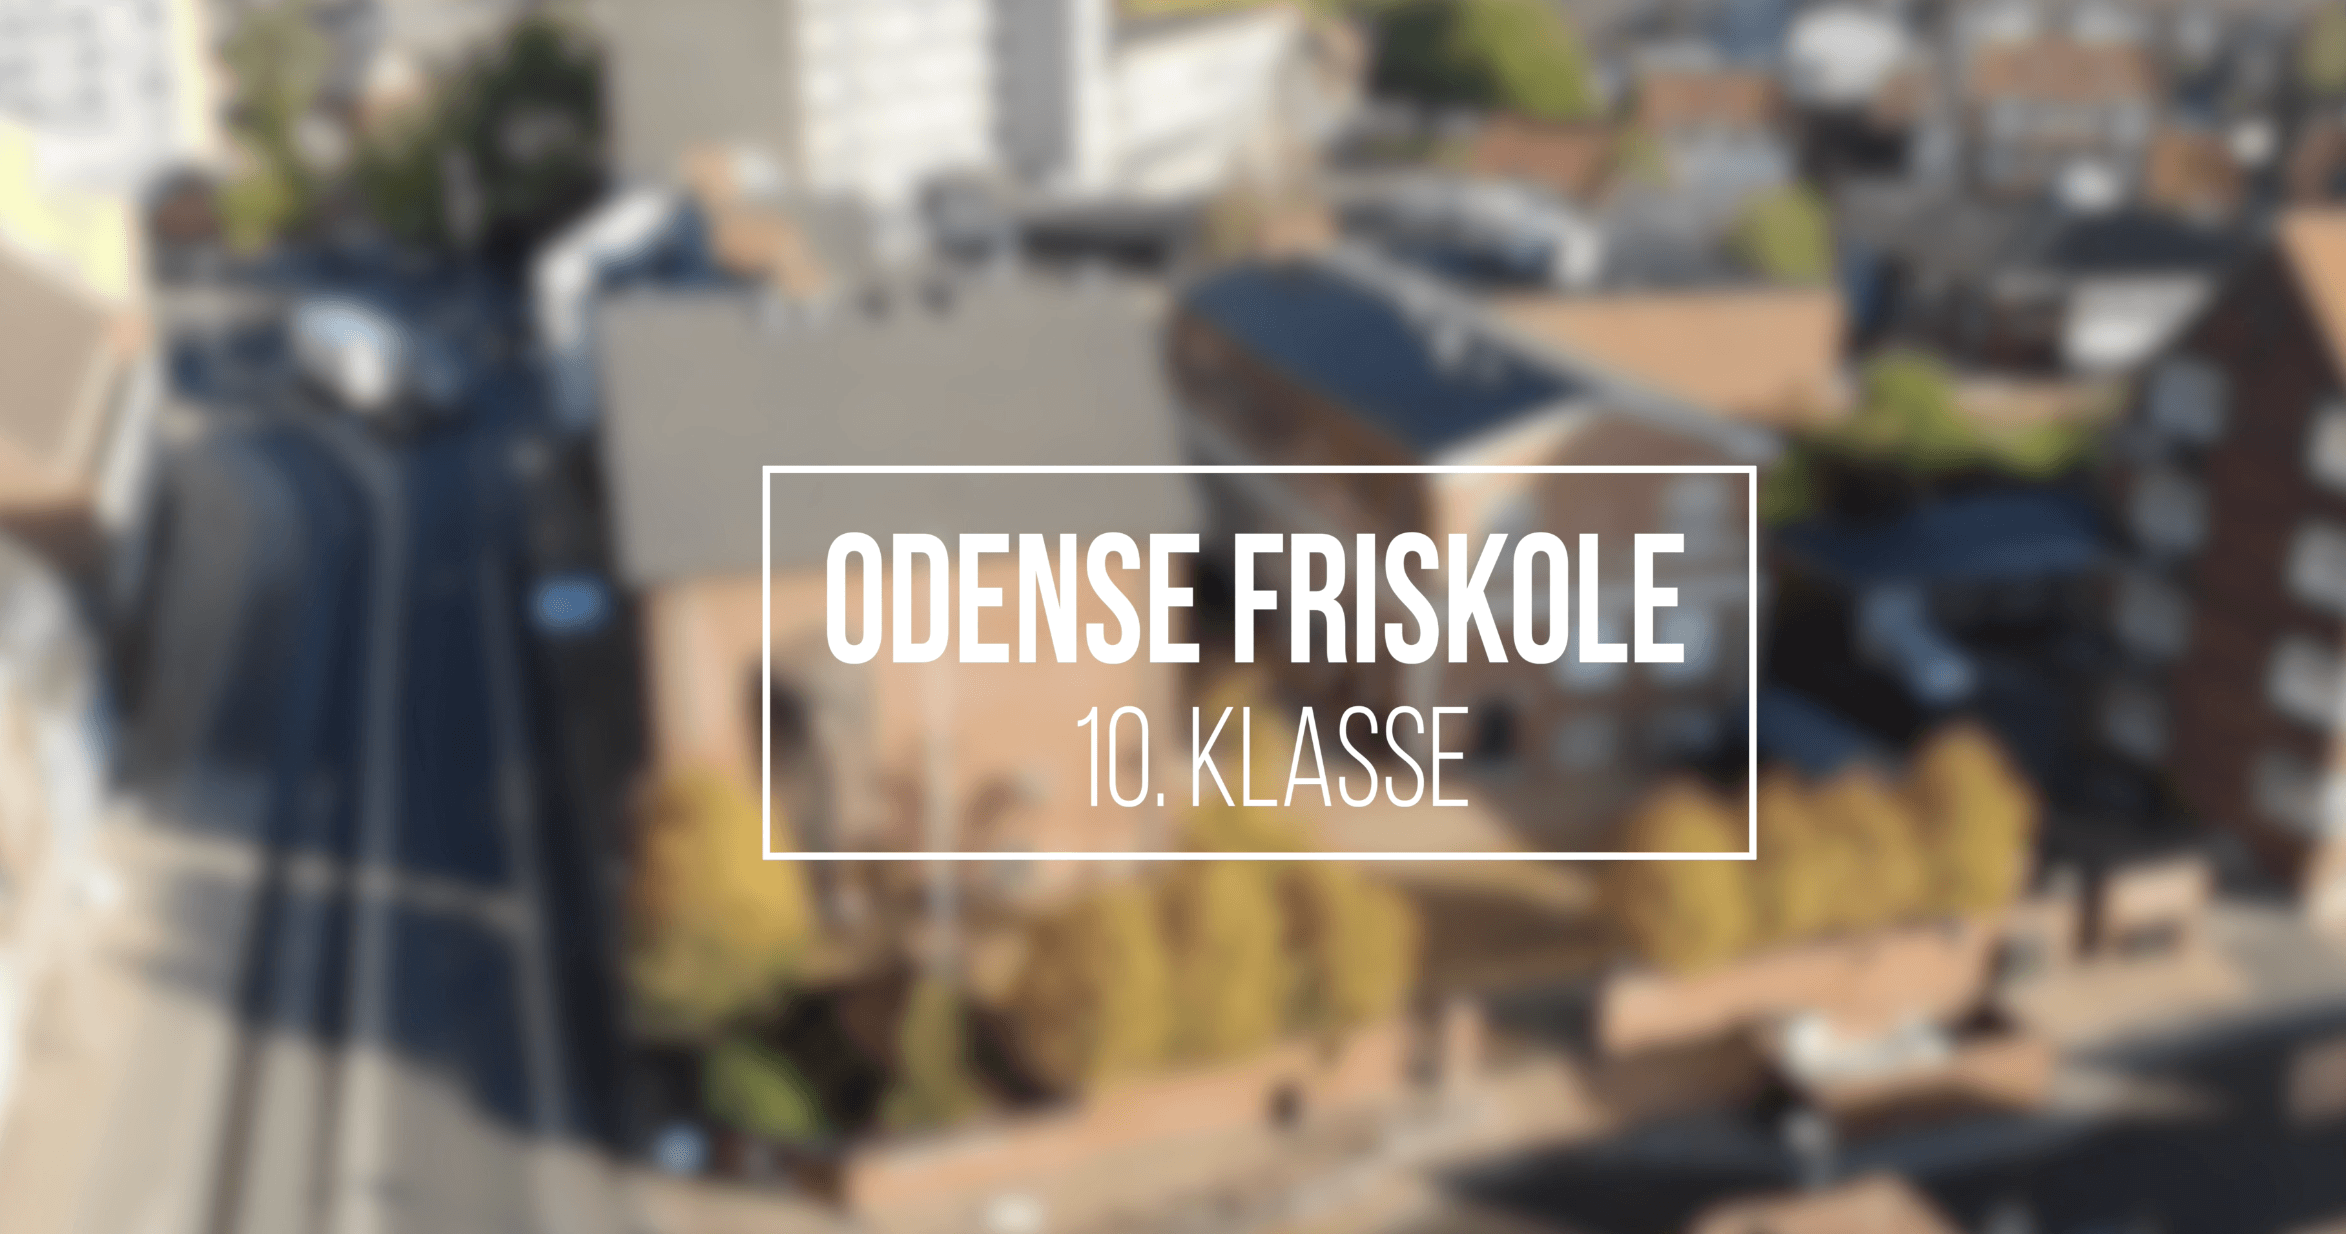 Odense friskole